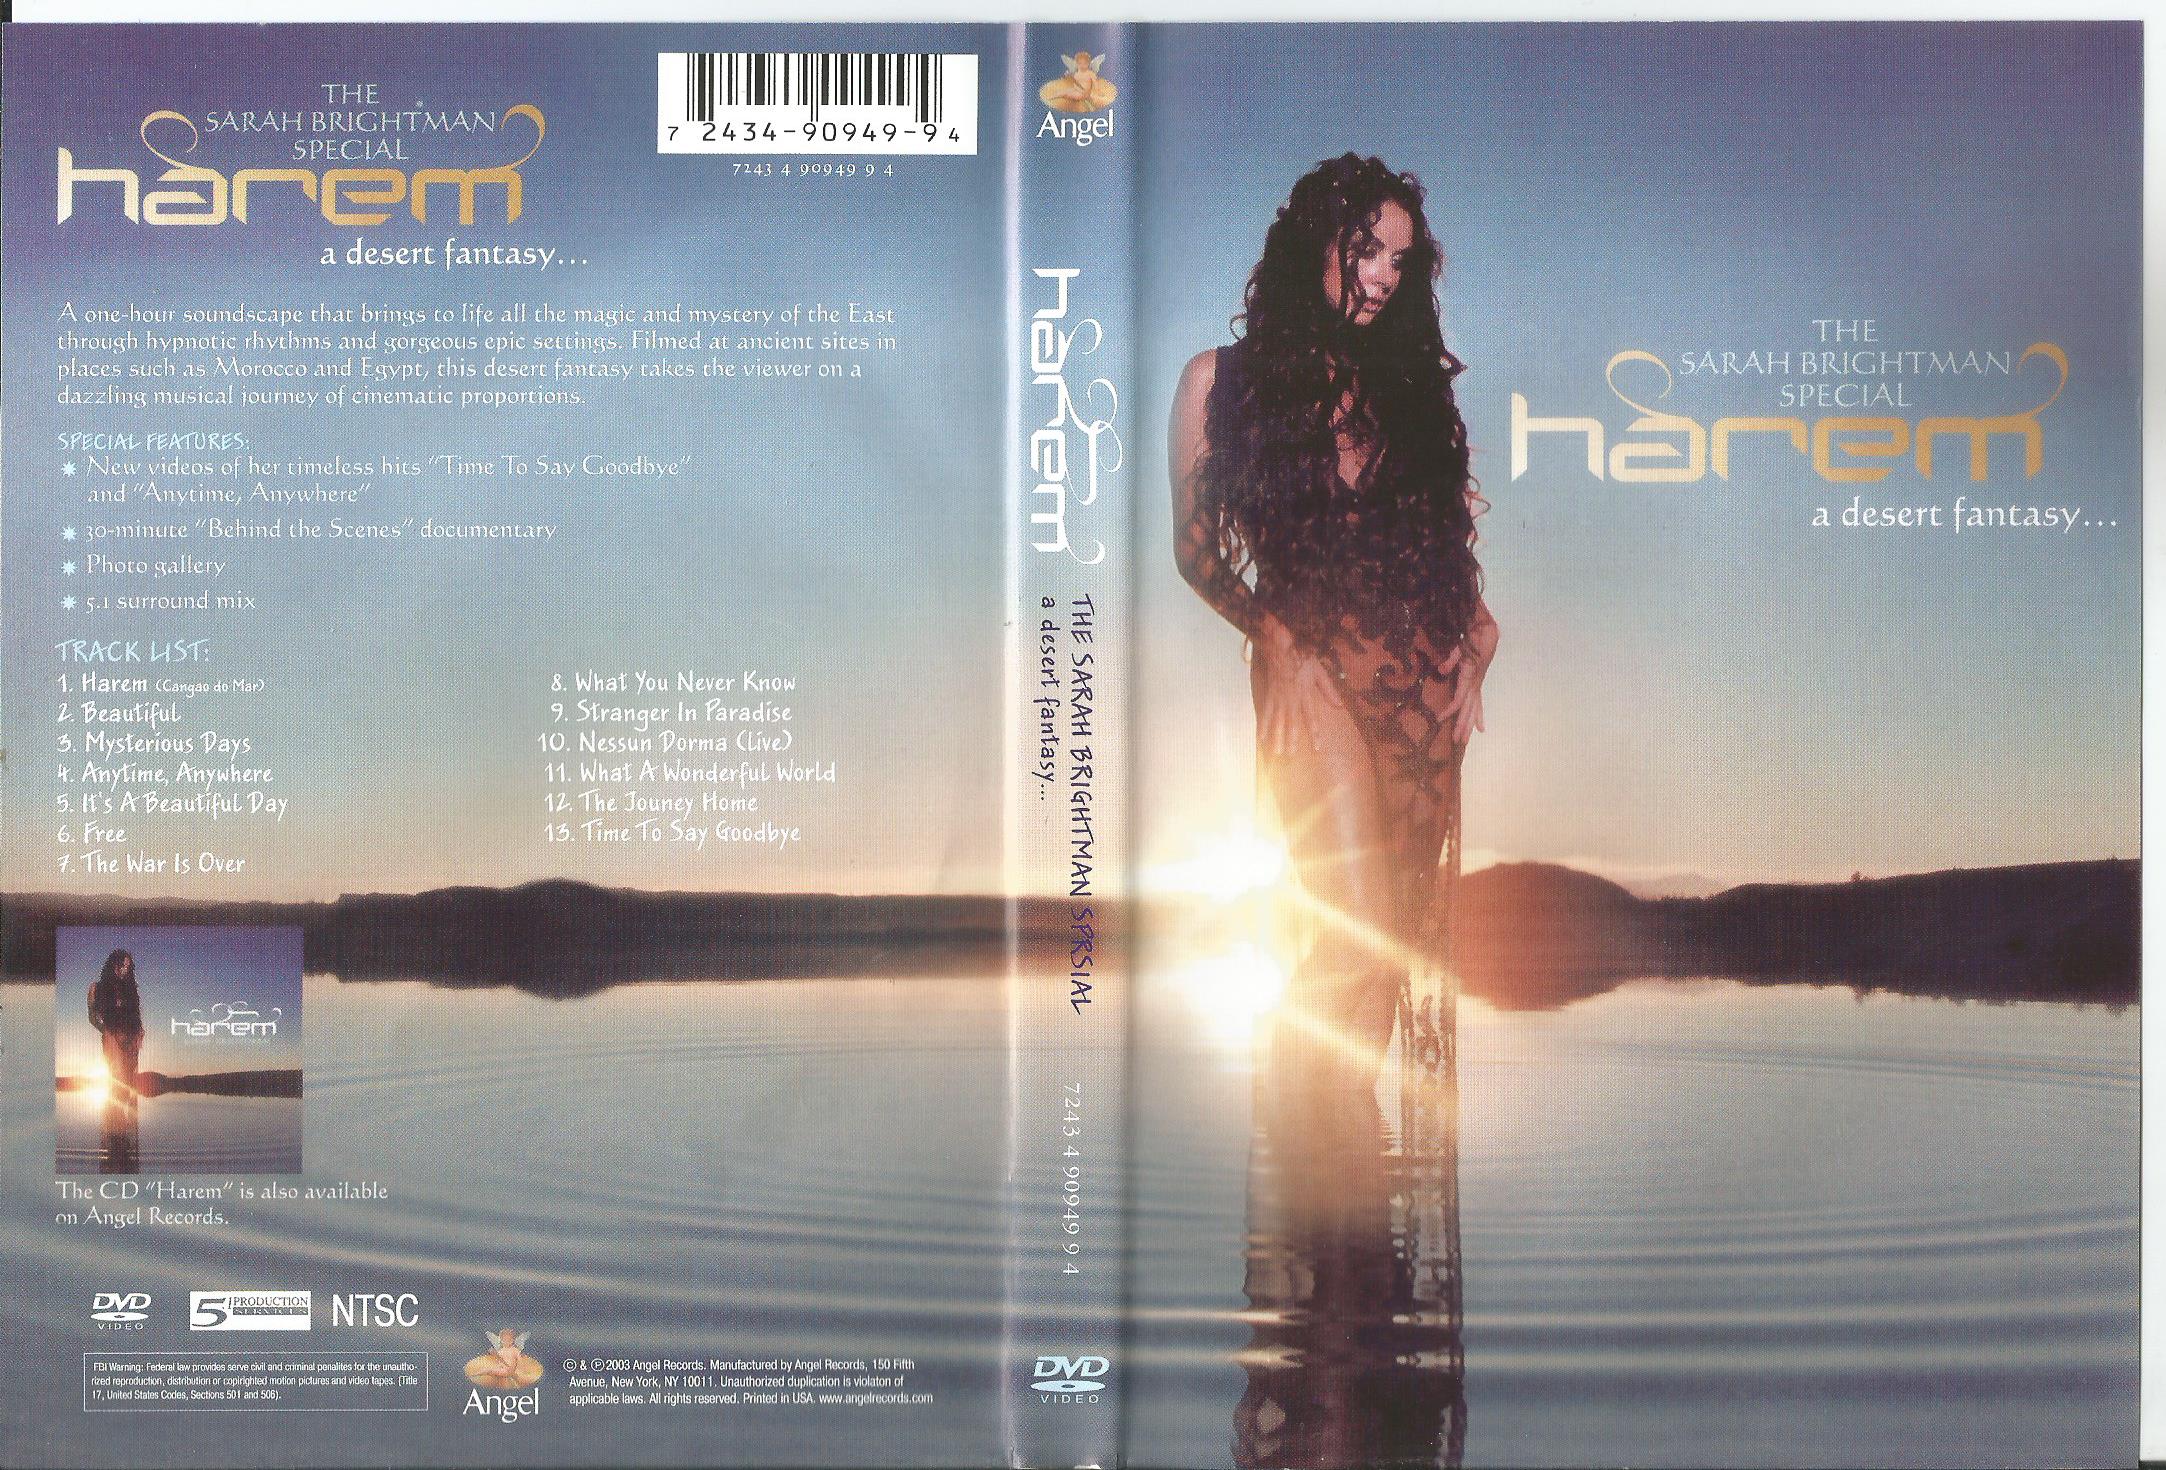 Sarah brightman scene. Sarah Brightman Harem a Desert Fantasy (2004). Sarah Brightman "Harem (CD)". Sarah Brightman Harem Tour 2004. Sarah Brightman 2003 - Harem.